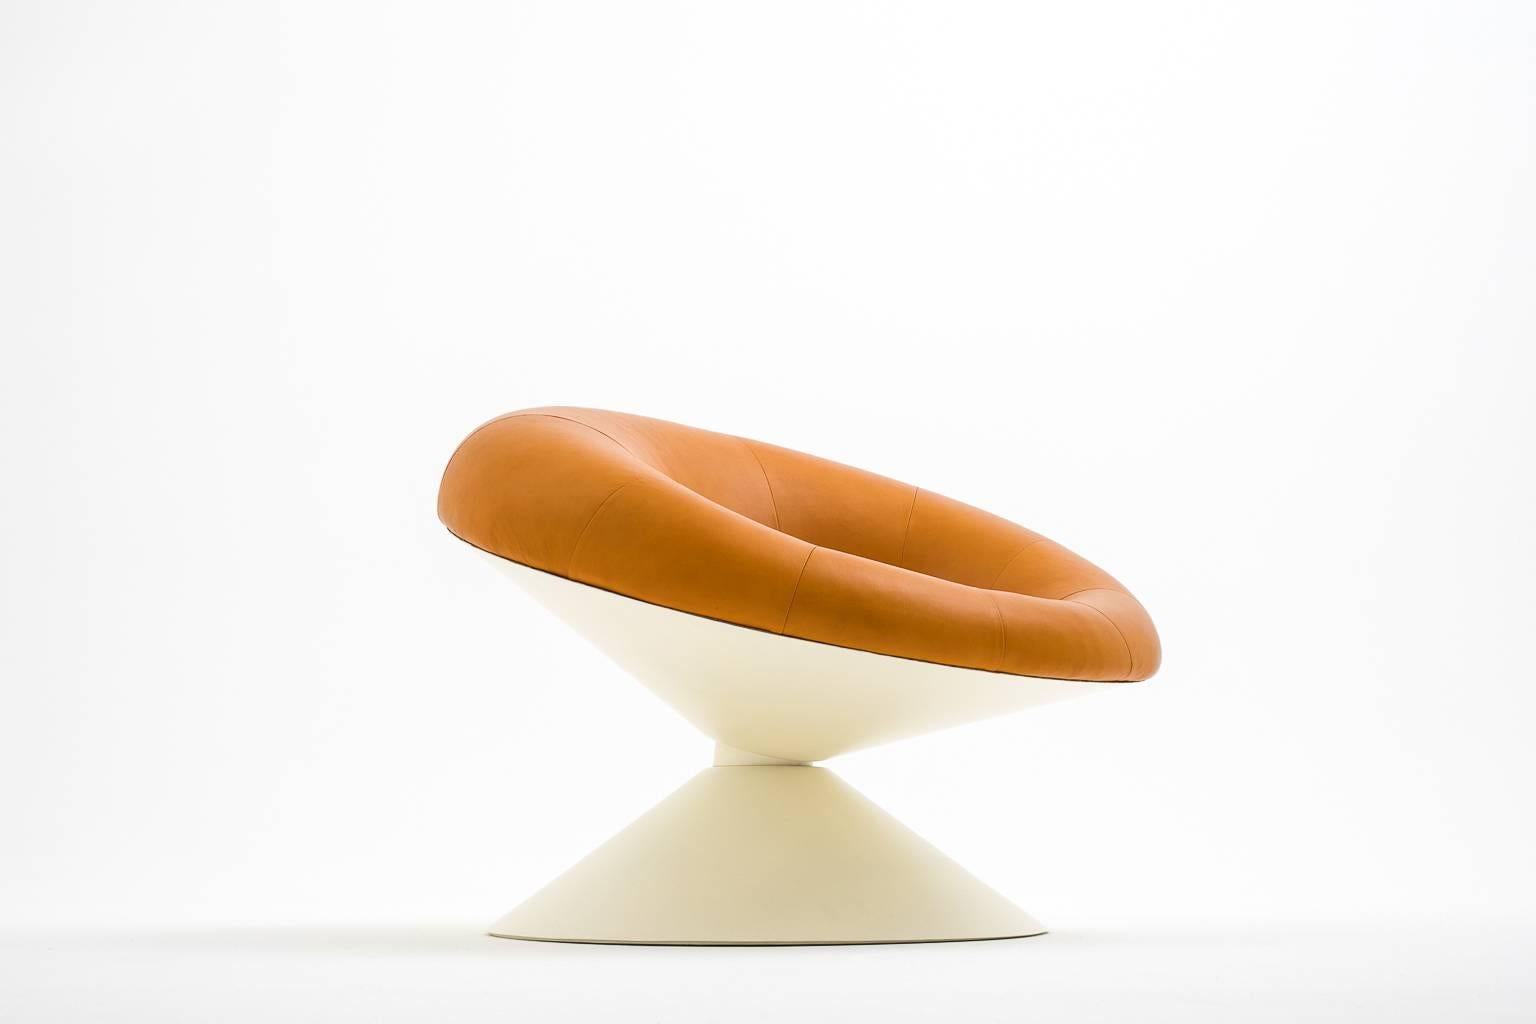 Diabolo-Stuhl aus Glasfaser und Leder von Ben Swildens, 1960er Jahre (Niederländisch)